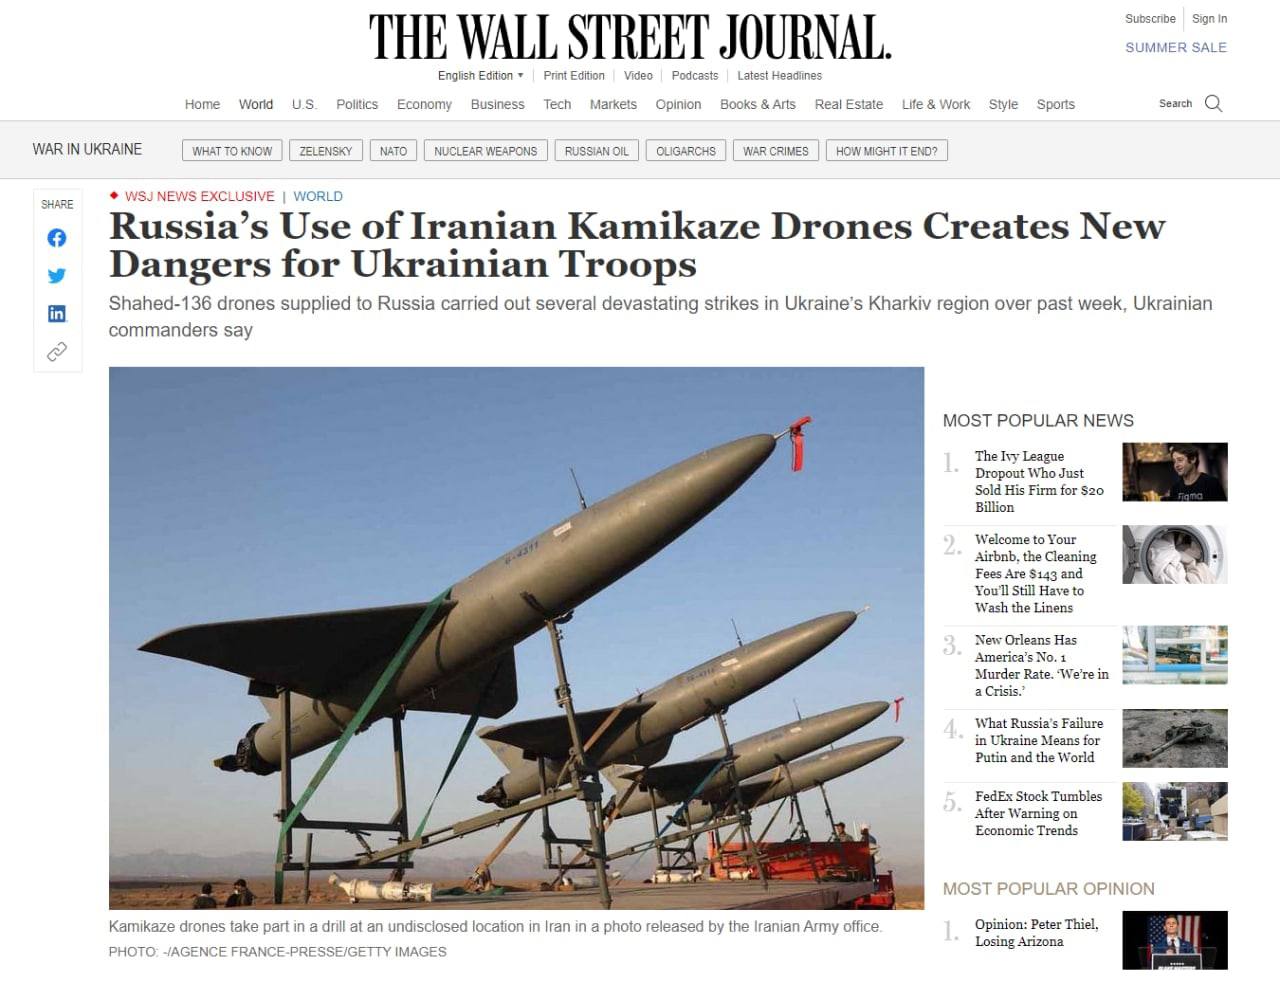 Дроны, которые Россия закупила у Ирана, представляют существенную угрозу для украинских военных и техники, —  пишет The Wall Street Journal